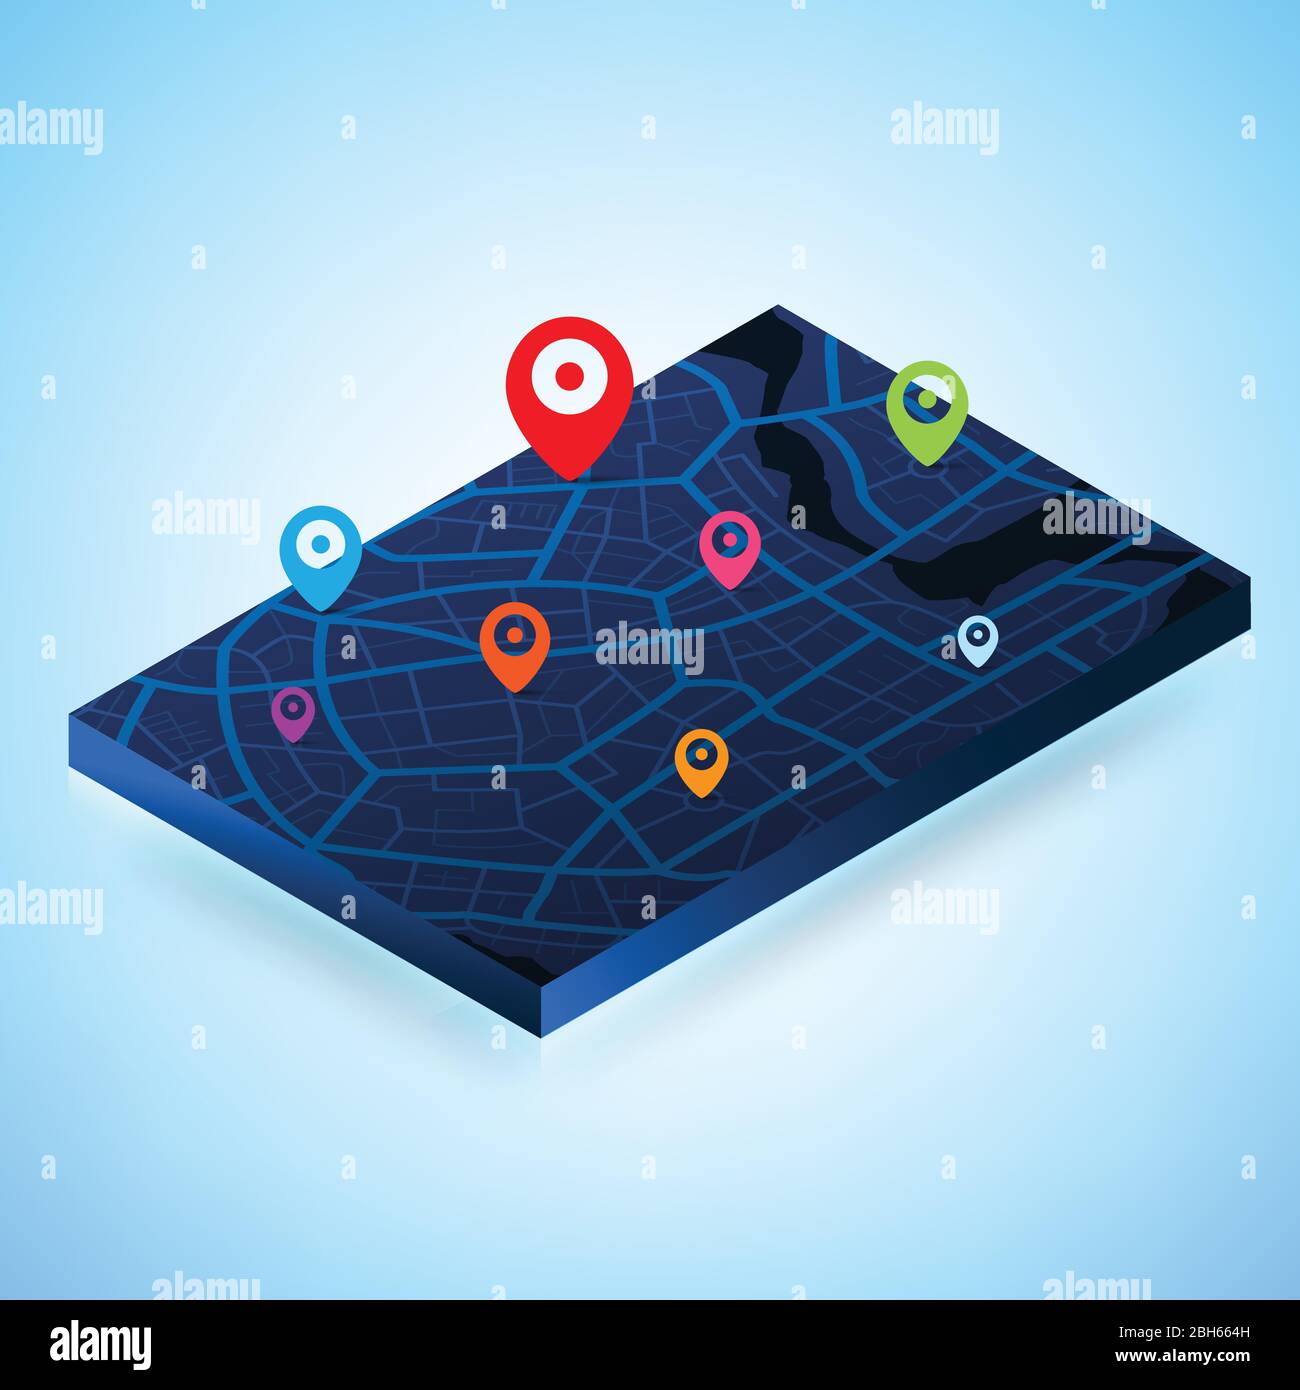 3D Isometrische Karte mit Zielort Punkt, Aerial Clean Draufsicht des Tages Zeit Stadtplan mit Straße und Fluss, Blank urban Imagination map, G Stock Vektor